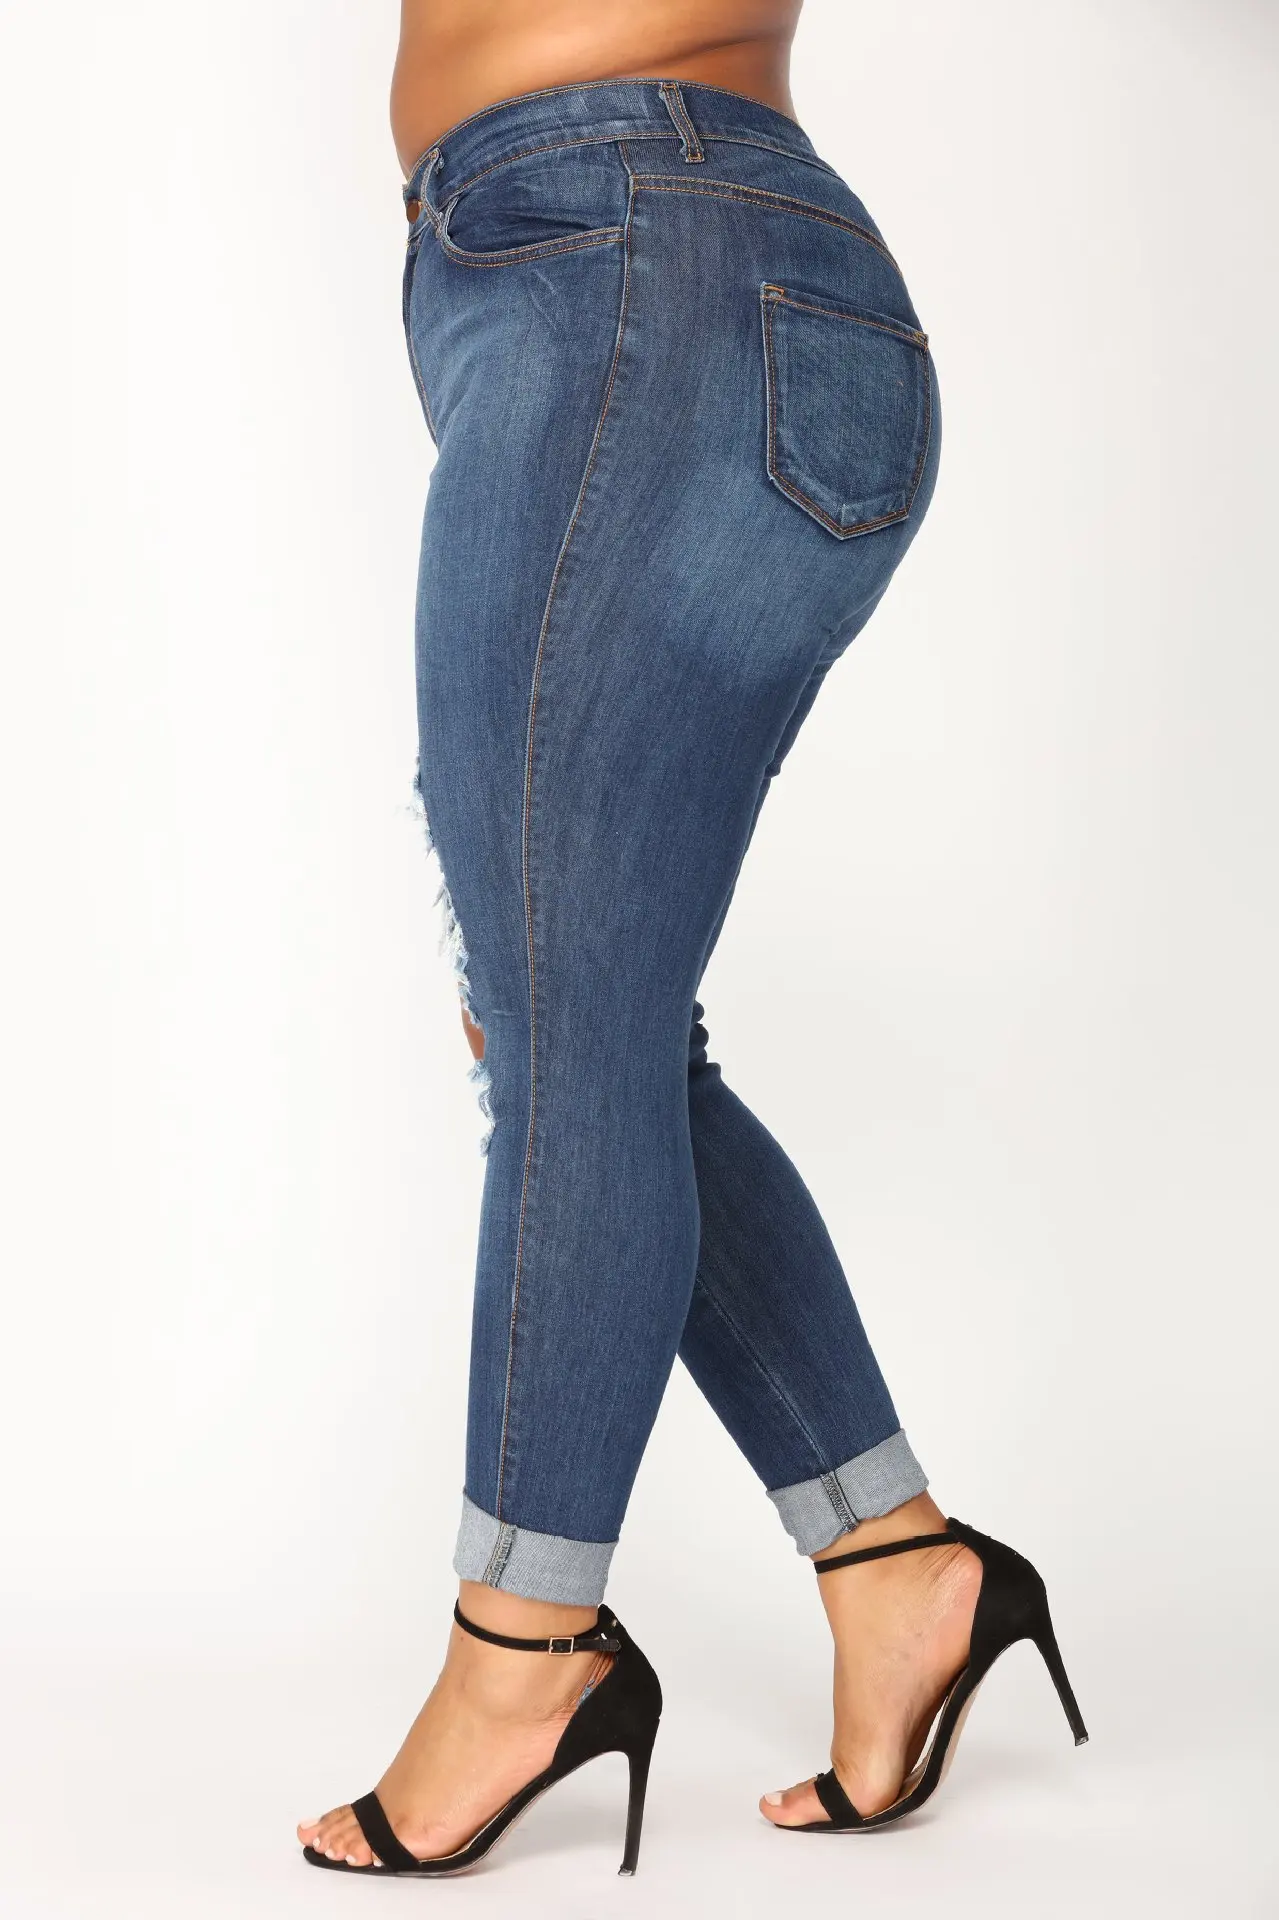 2019 Весна и лето Европа и Америка свободные плюс размер 5xl синие джинсы сексуальные брюки карандаш рваные джинсы Базовые Женские длинные